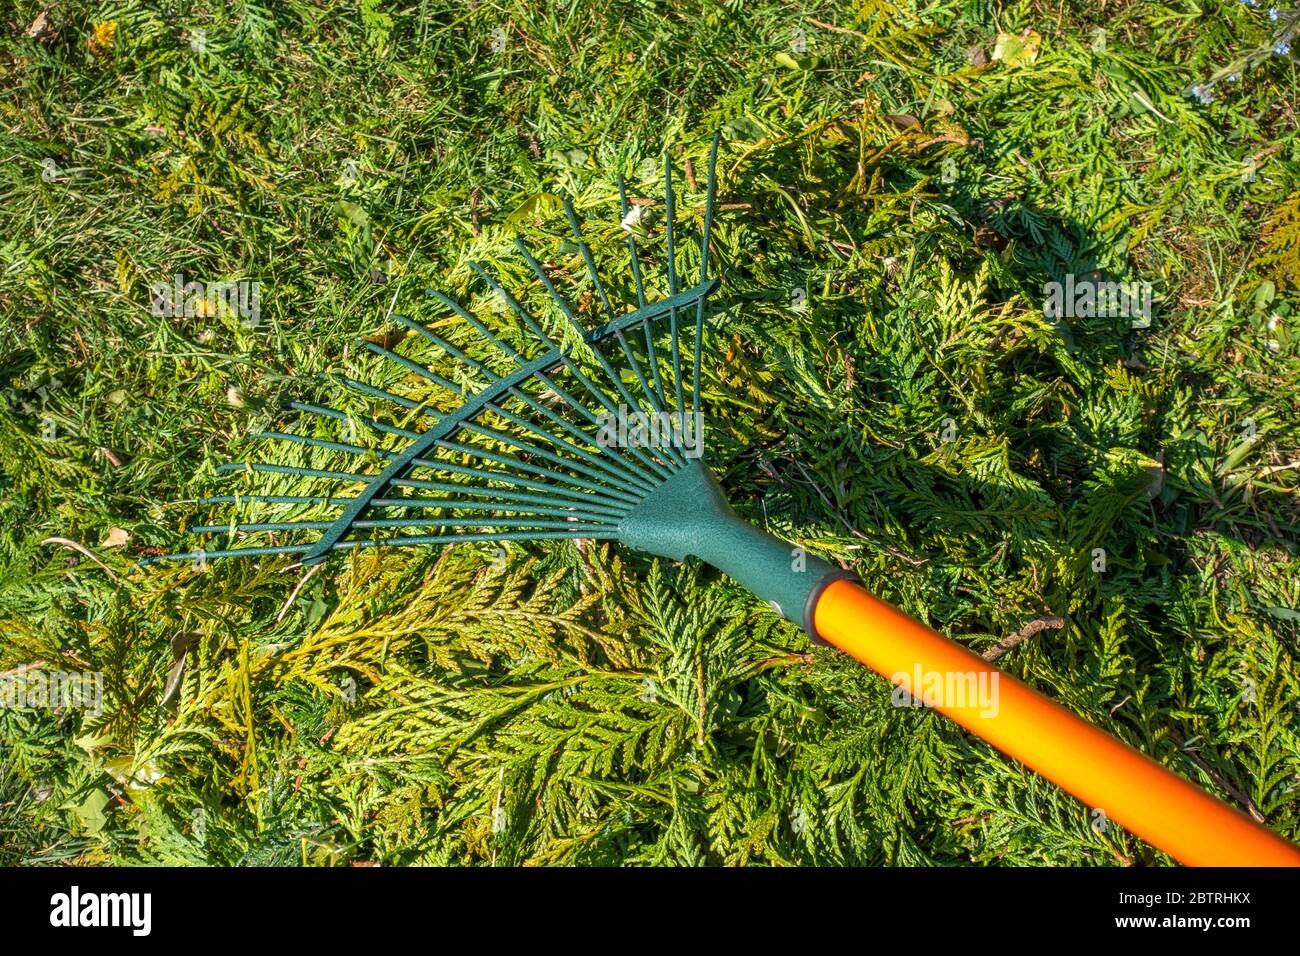 Colpo di closeup di un rastrello di prato che è usato per raccogliere insieme un mucchio di rifili appena tagliati siepe, giacente sull'erba in un giardino soleggiato / cortile. Foto Stock